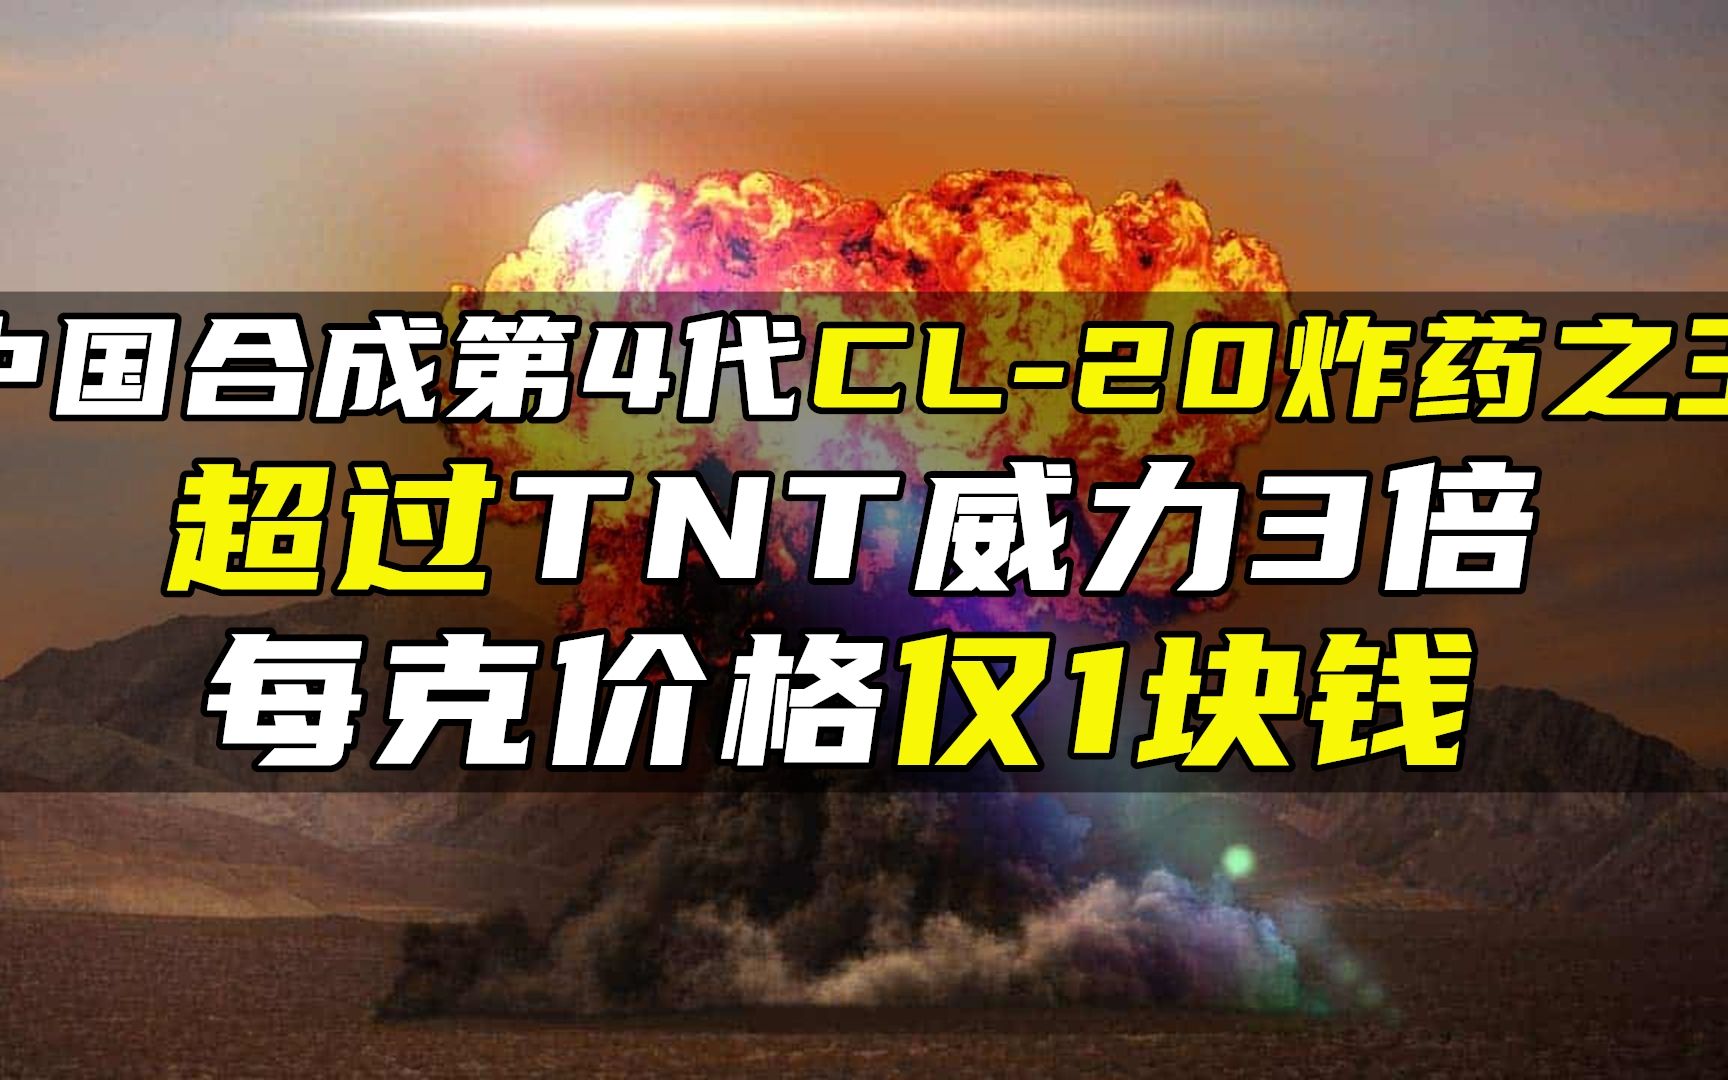 中国合成第4代CL-20炸药之王，超过TNT威力3倍，每克价格仅1块钱